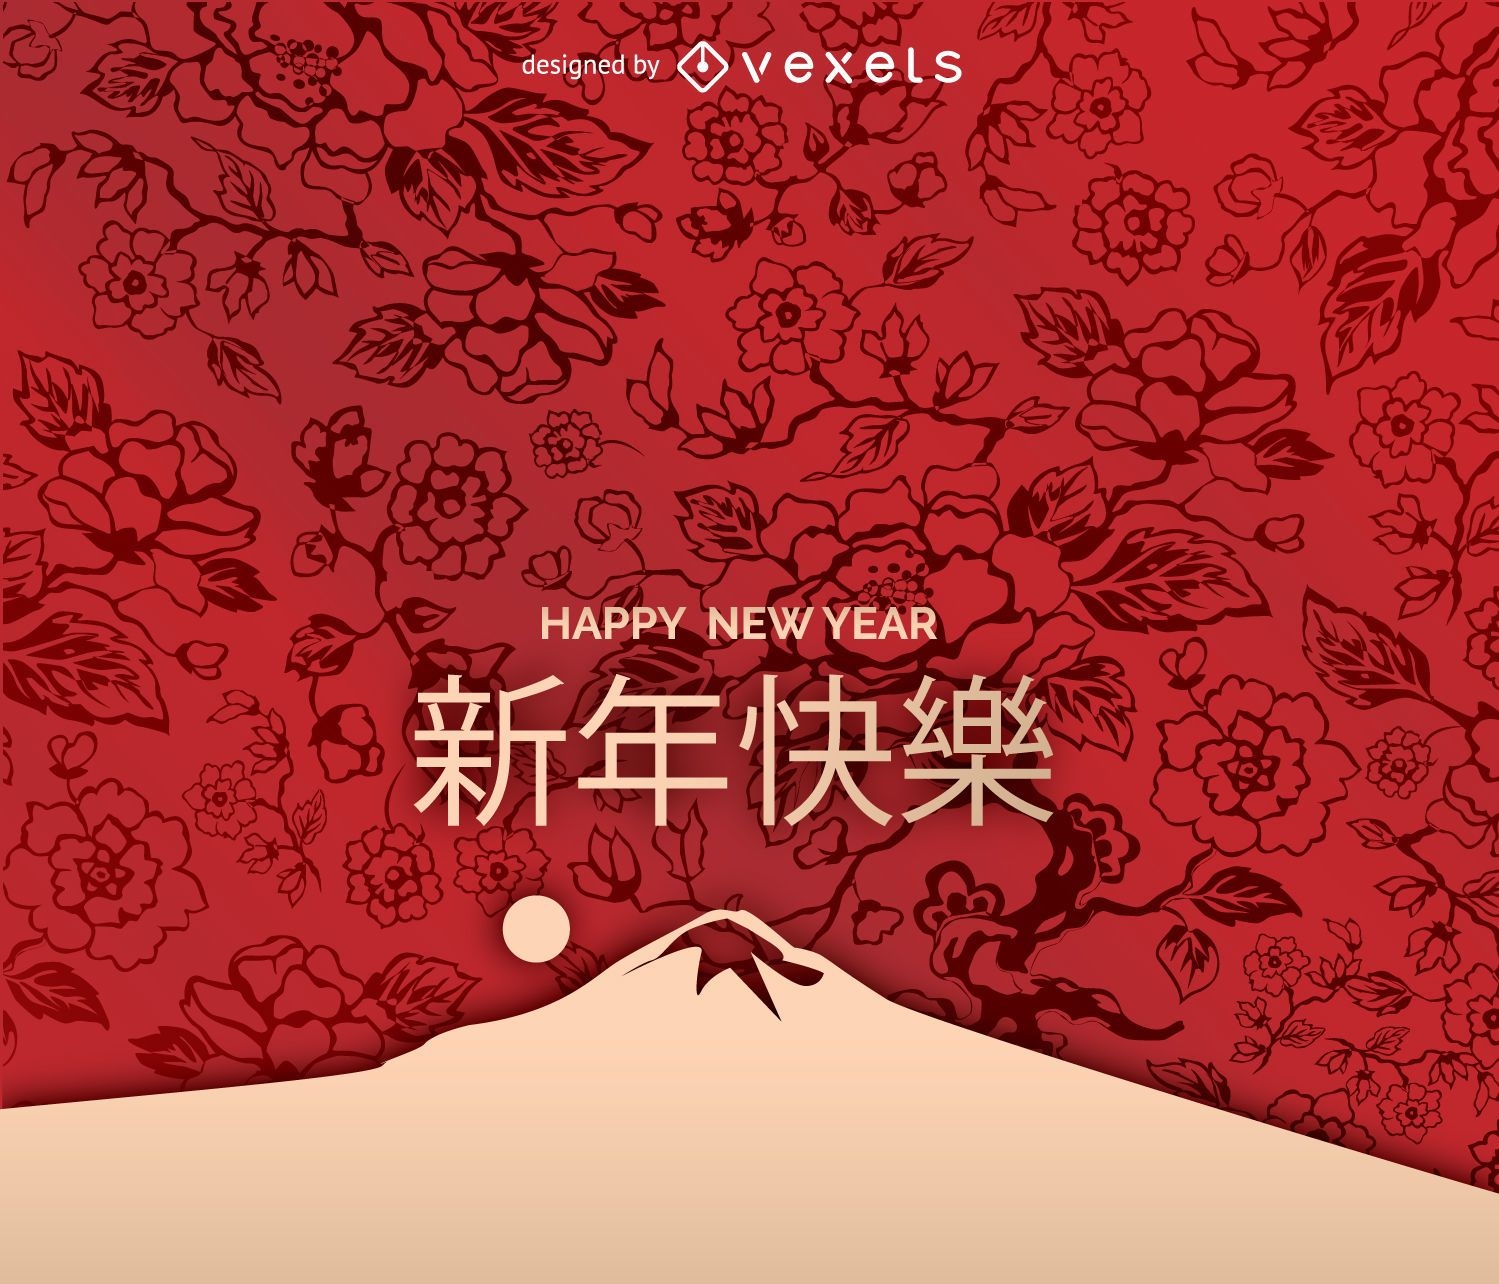 Chinese new year art